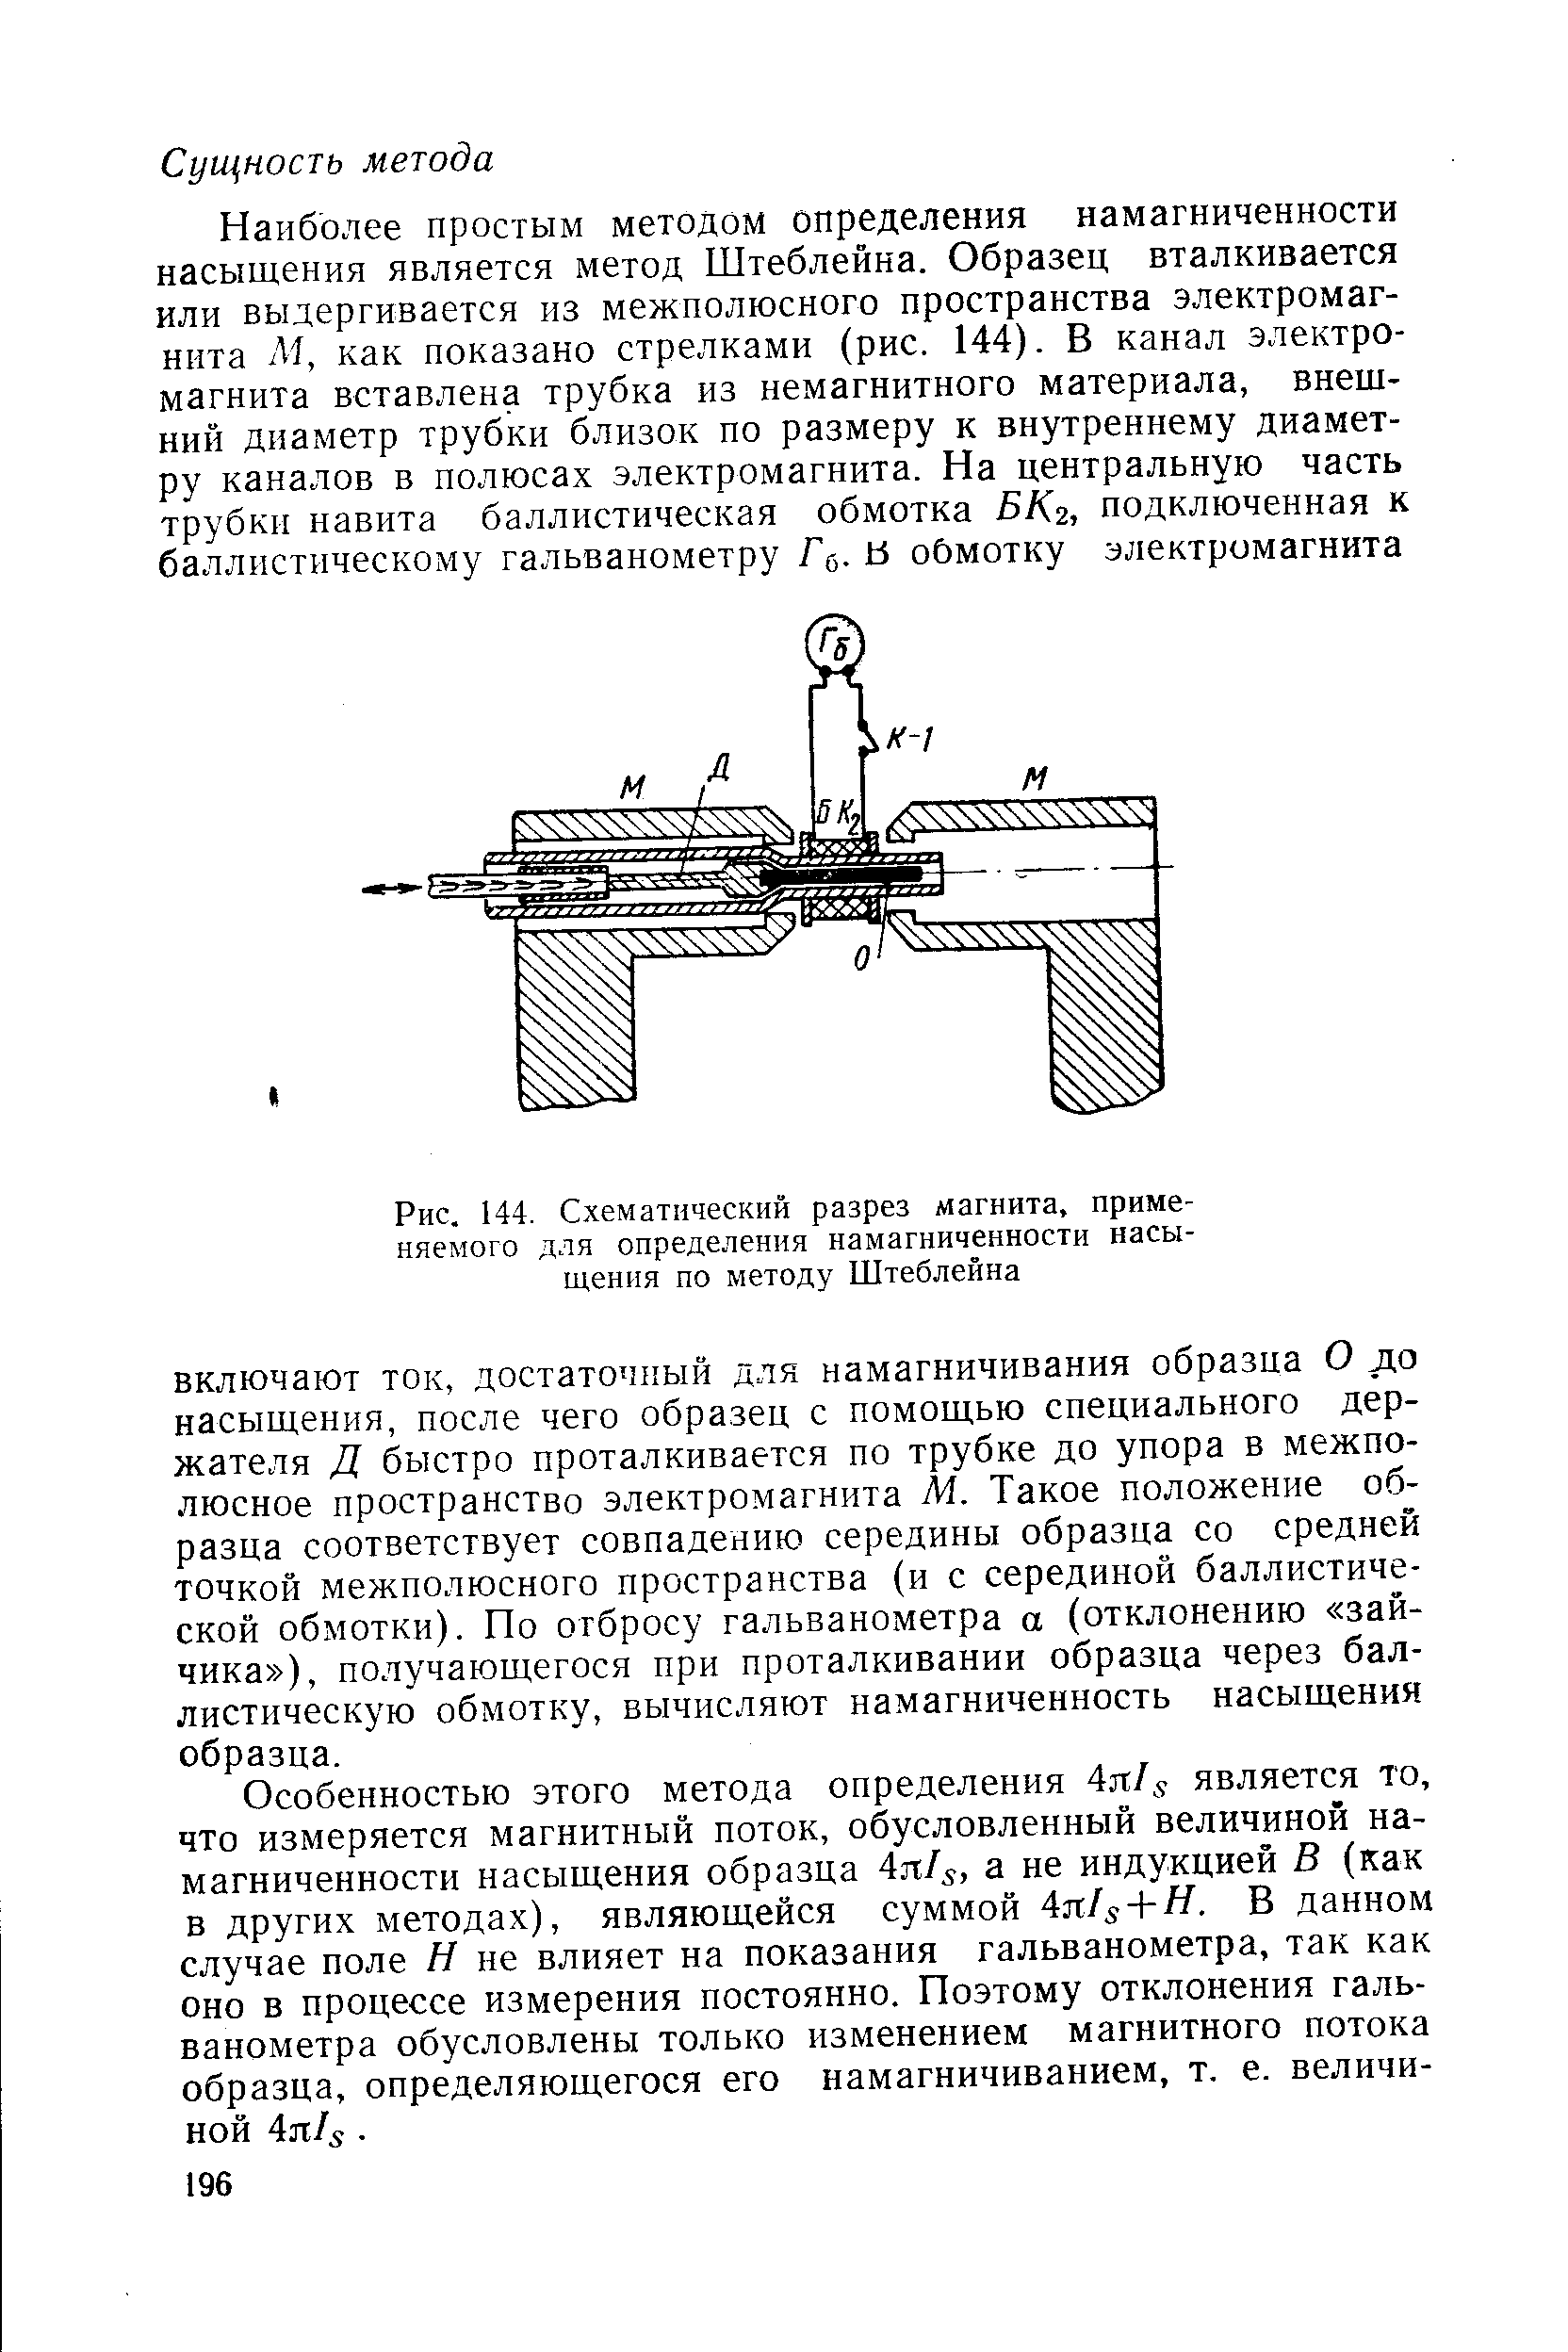 Рис. 144. Схематический разрез магнита, применяемого для определения намагниченности насыщения по методу Штеблейна
